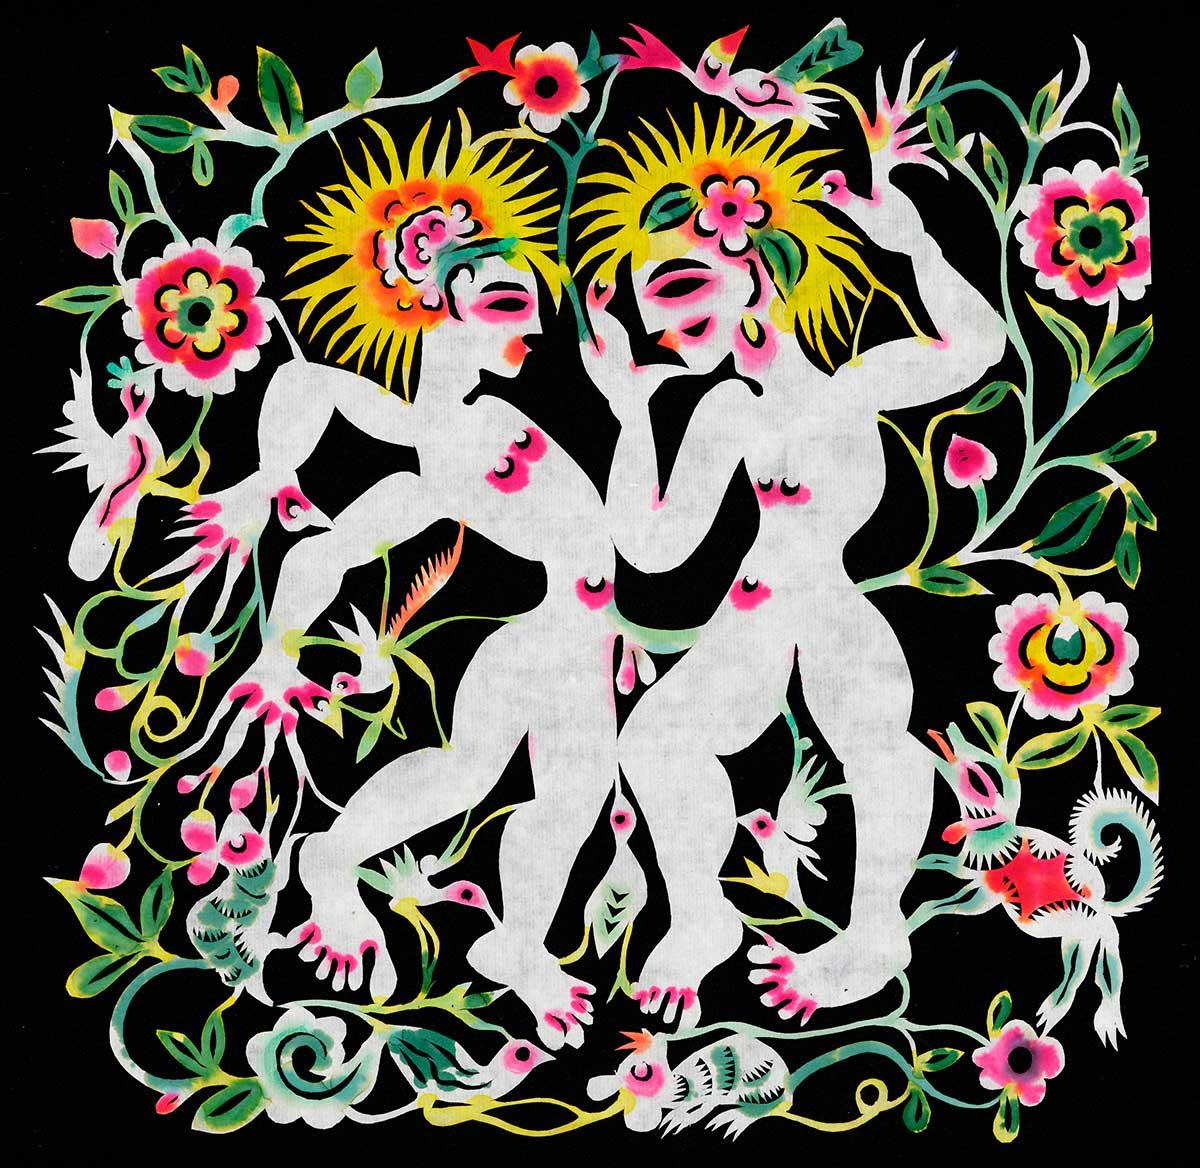 Hemlig kärlek Pappersklippet ”Joy 3” av pseudonymen Xiyade ingår i Östasiatiska museets utställning ”Secret love” från 2012. Utställningen, om identitet, sexualitet och normer i Kina, visade museets normkritiska kompetens, anser Göran Sommardal.